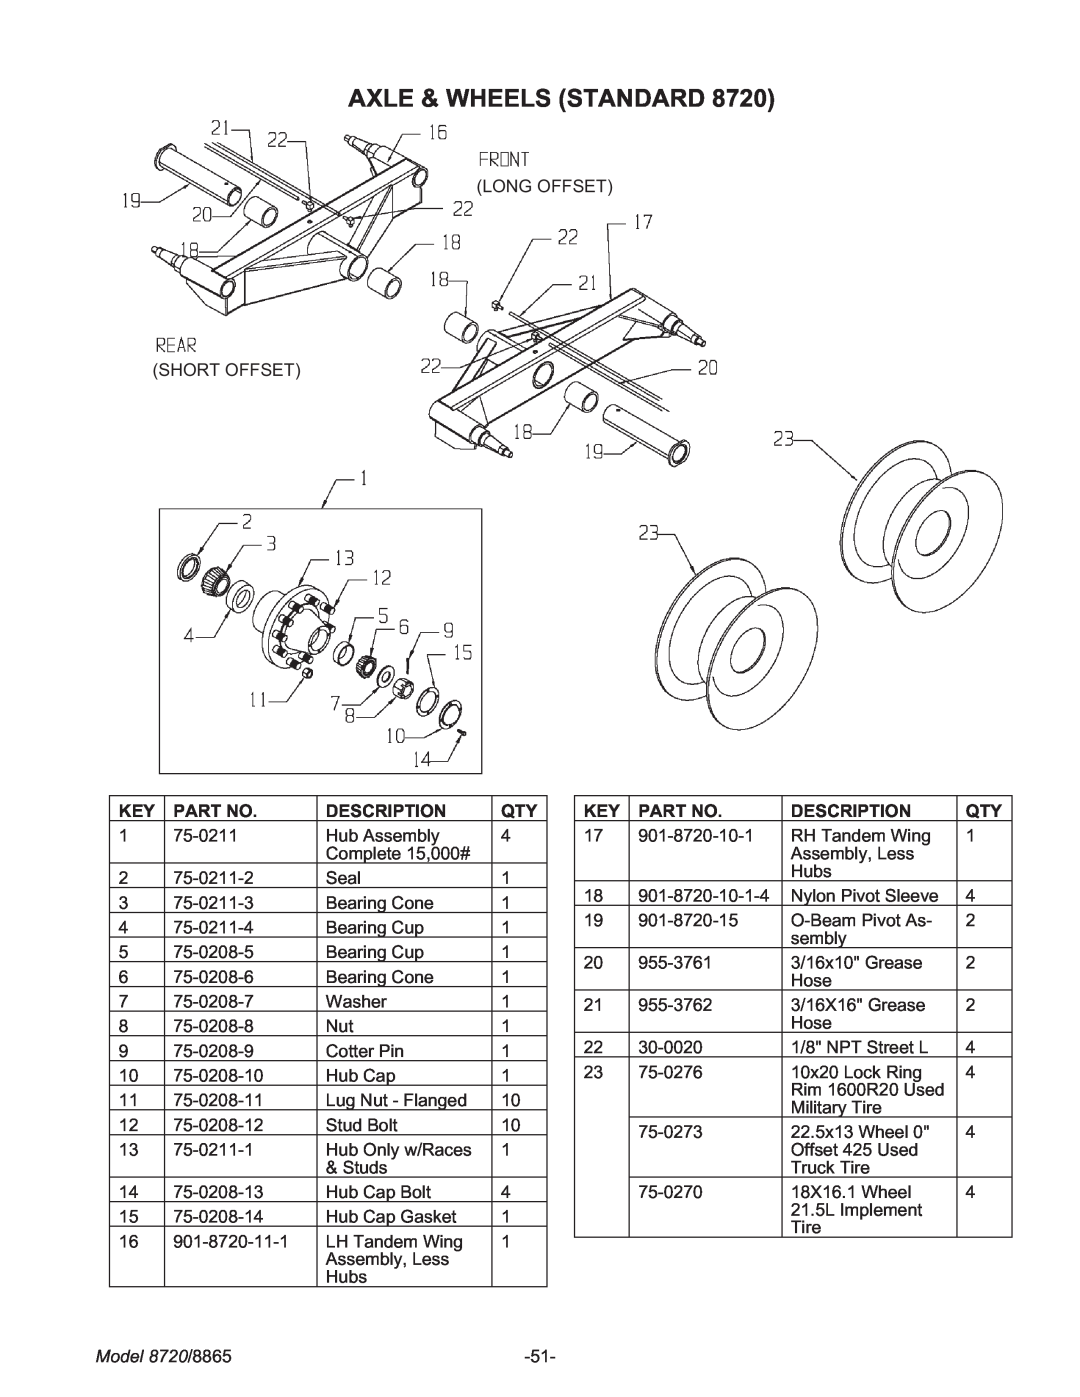 Meyer manual Axle & Wheels Standard, Description, Model 8720/8865 